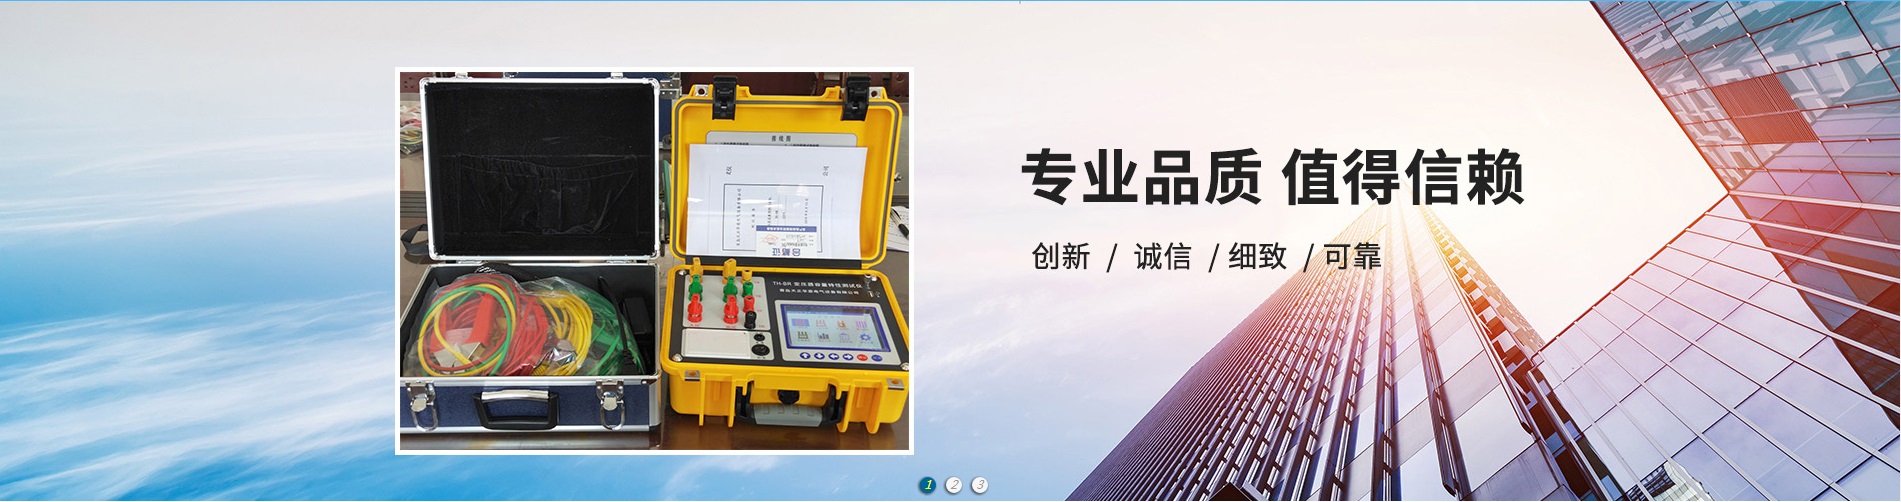 蓄电池充放电测试仪、广安本地蓄电池充放电测试仪、广安、广安蓄电池充放电测试仪